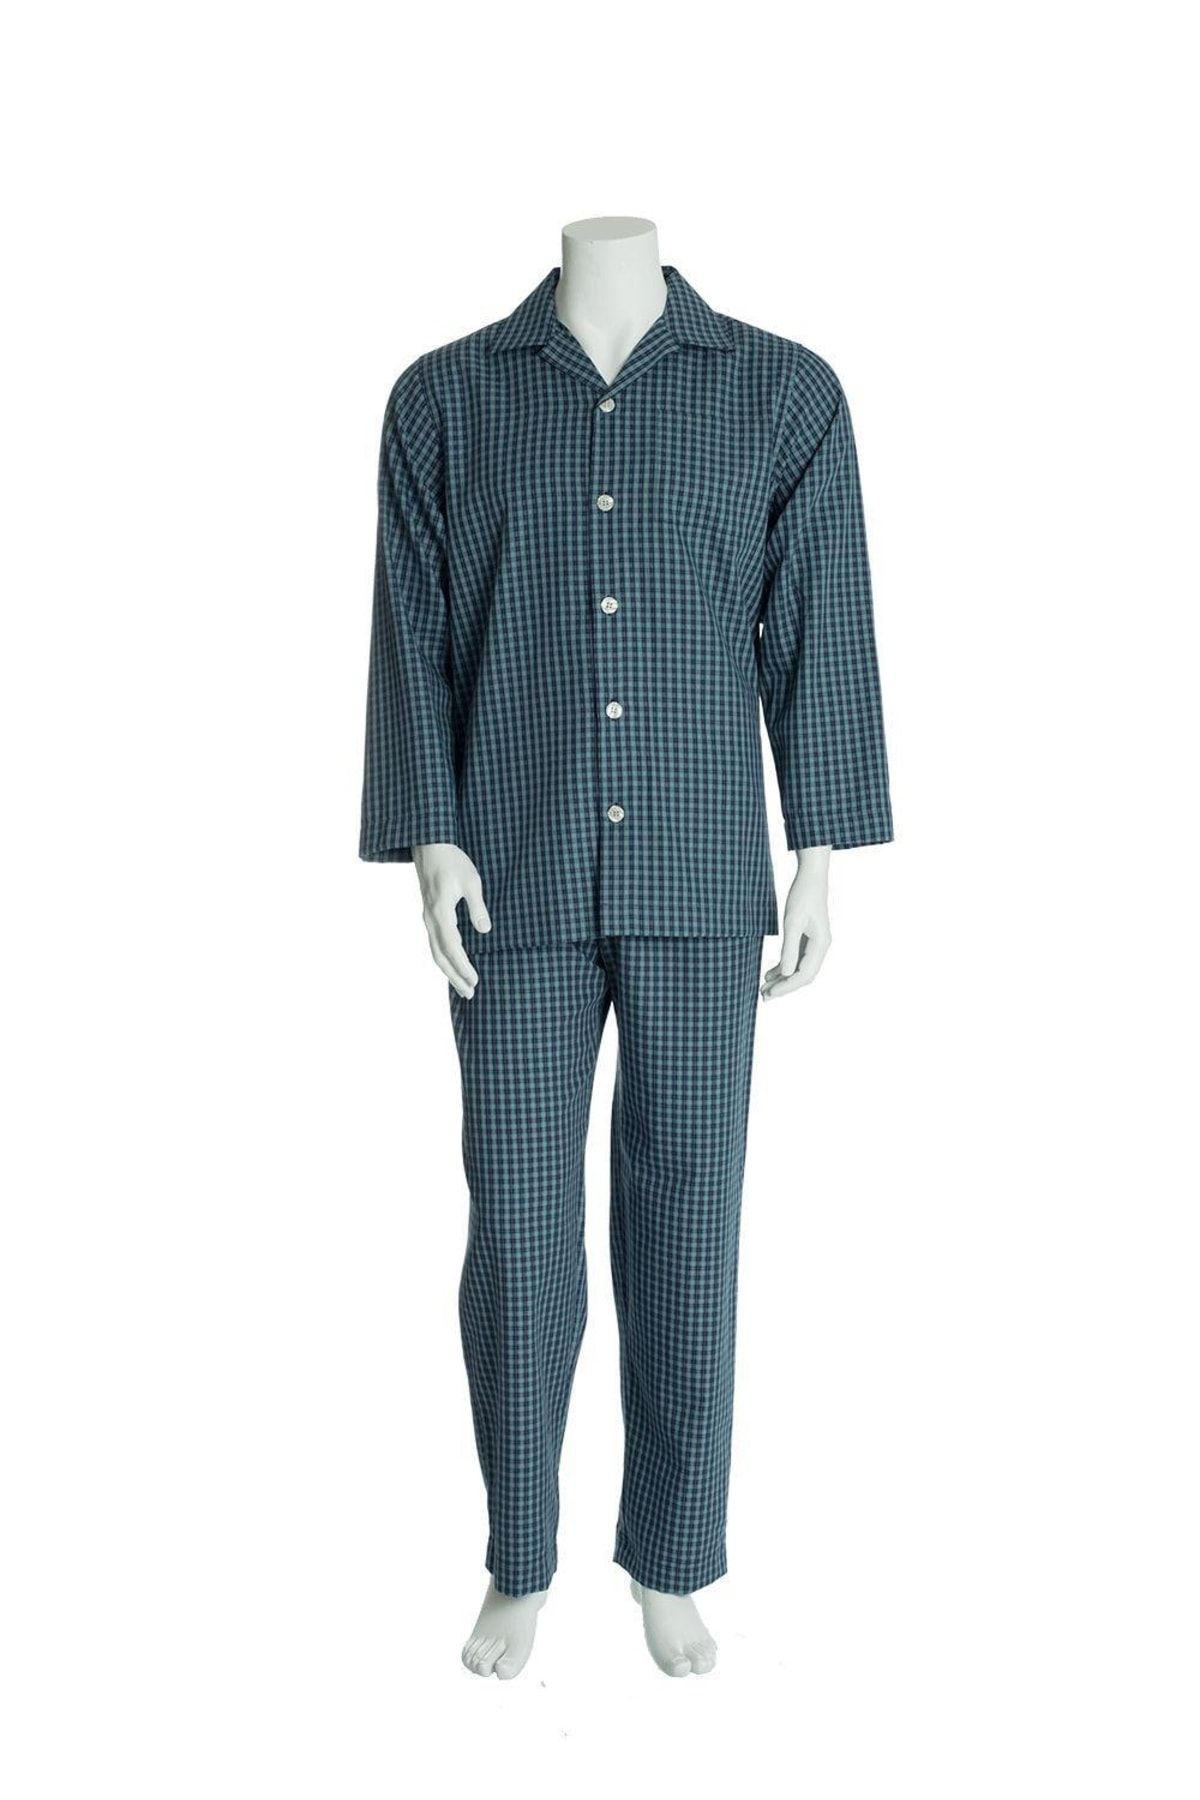 TheDon Poplin Erkek Pijama Takımı Desen 32